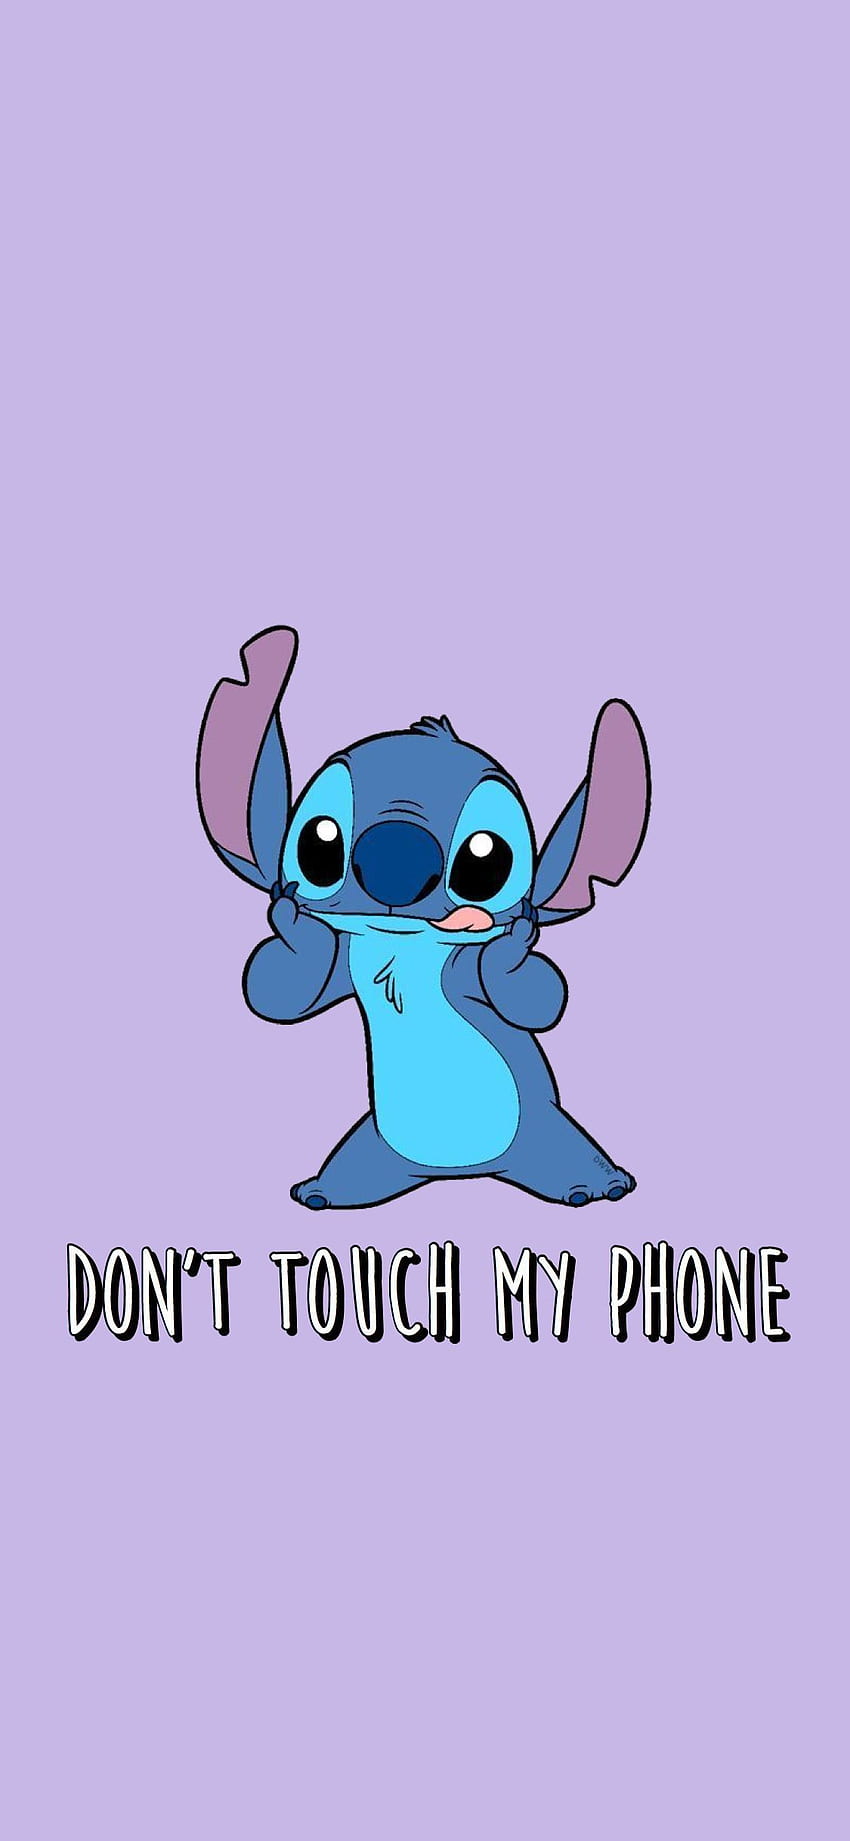 Nếu bạn yêu thích Stitch - nhân vật đáng yêu từ bộ phim hoạt hình của Disney, thì bạn sẽ thích hình nền Stitch đáng yêu không chạm điện thoại. Nó là một cách tuyệt vời để trang trí cho điện thoại của bạn một cách đáng yêu và vui nhộn.